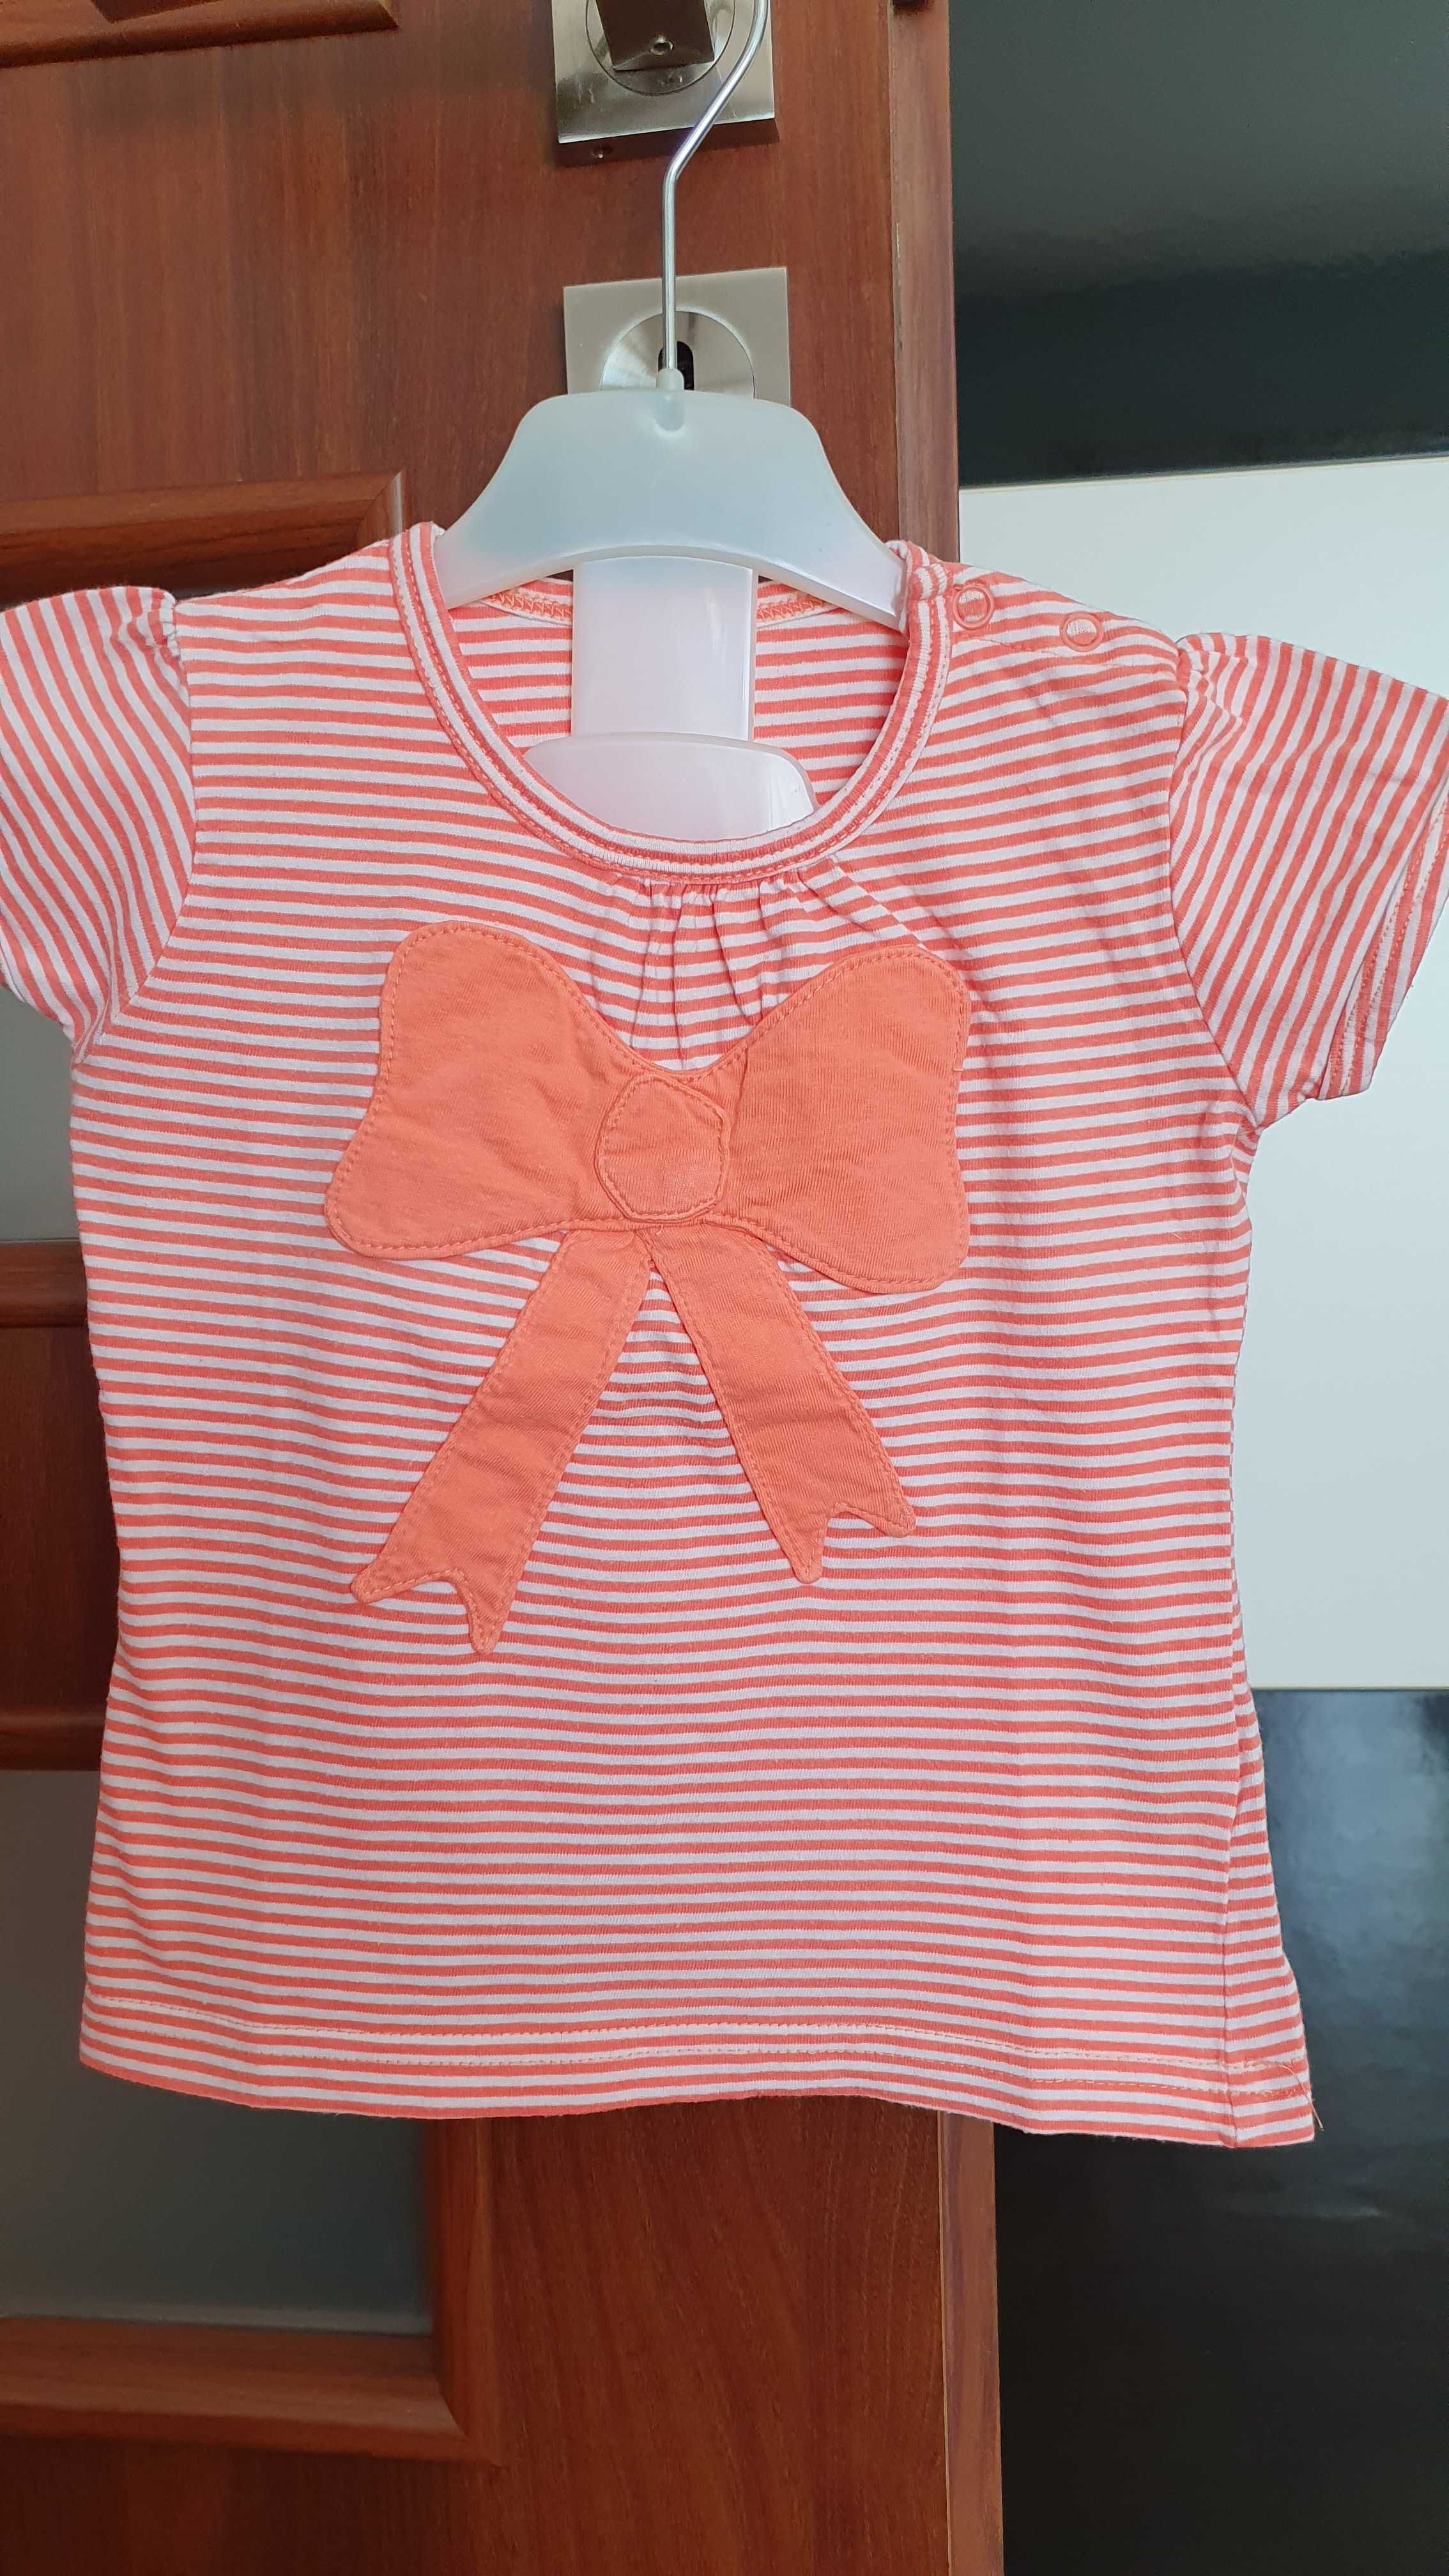 Wibra holenderski t-shirt dla dziewczynki rozmiar 86